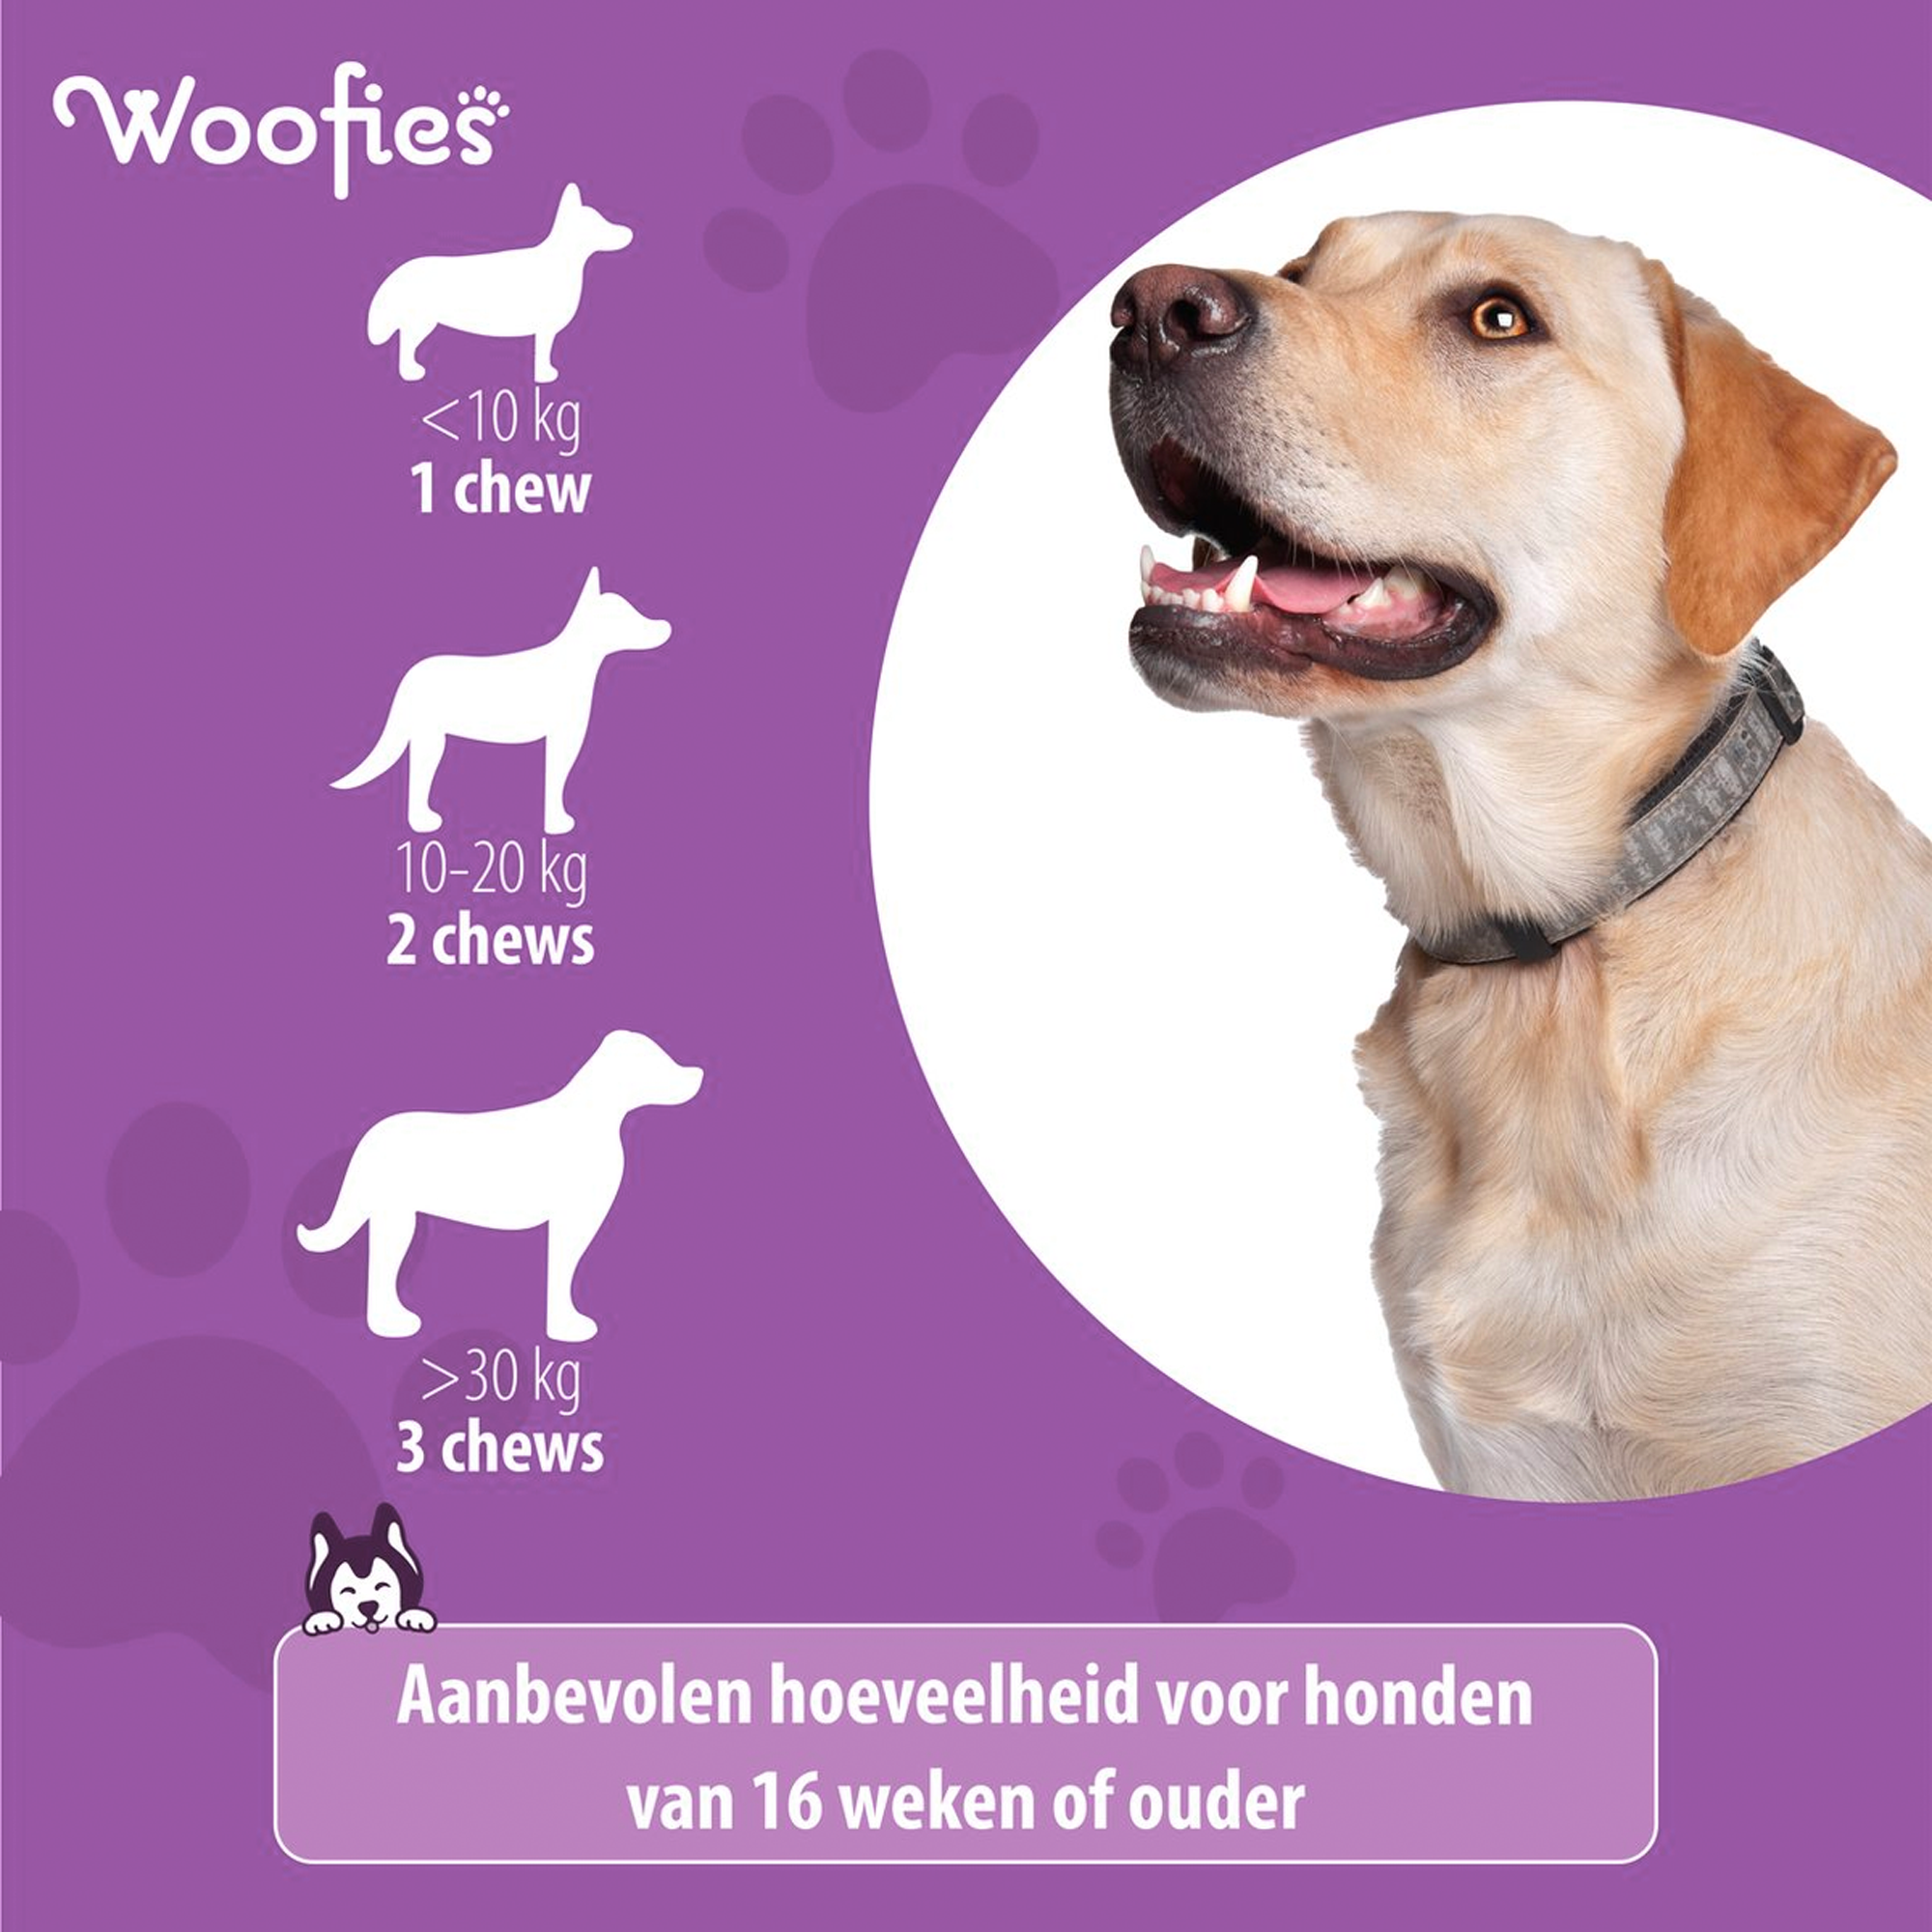 "Voedingsinformatie en voordelen van Woofies Skin & Coat voor honden."